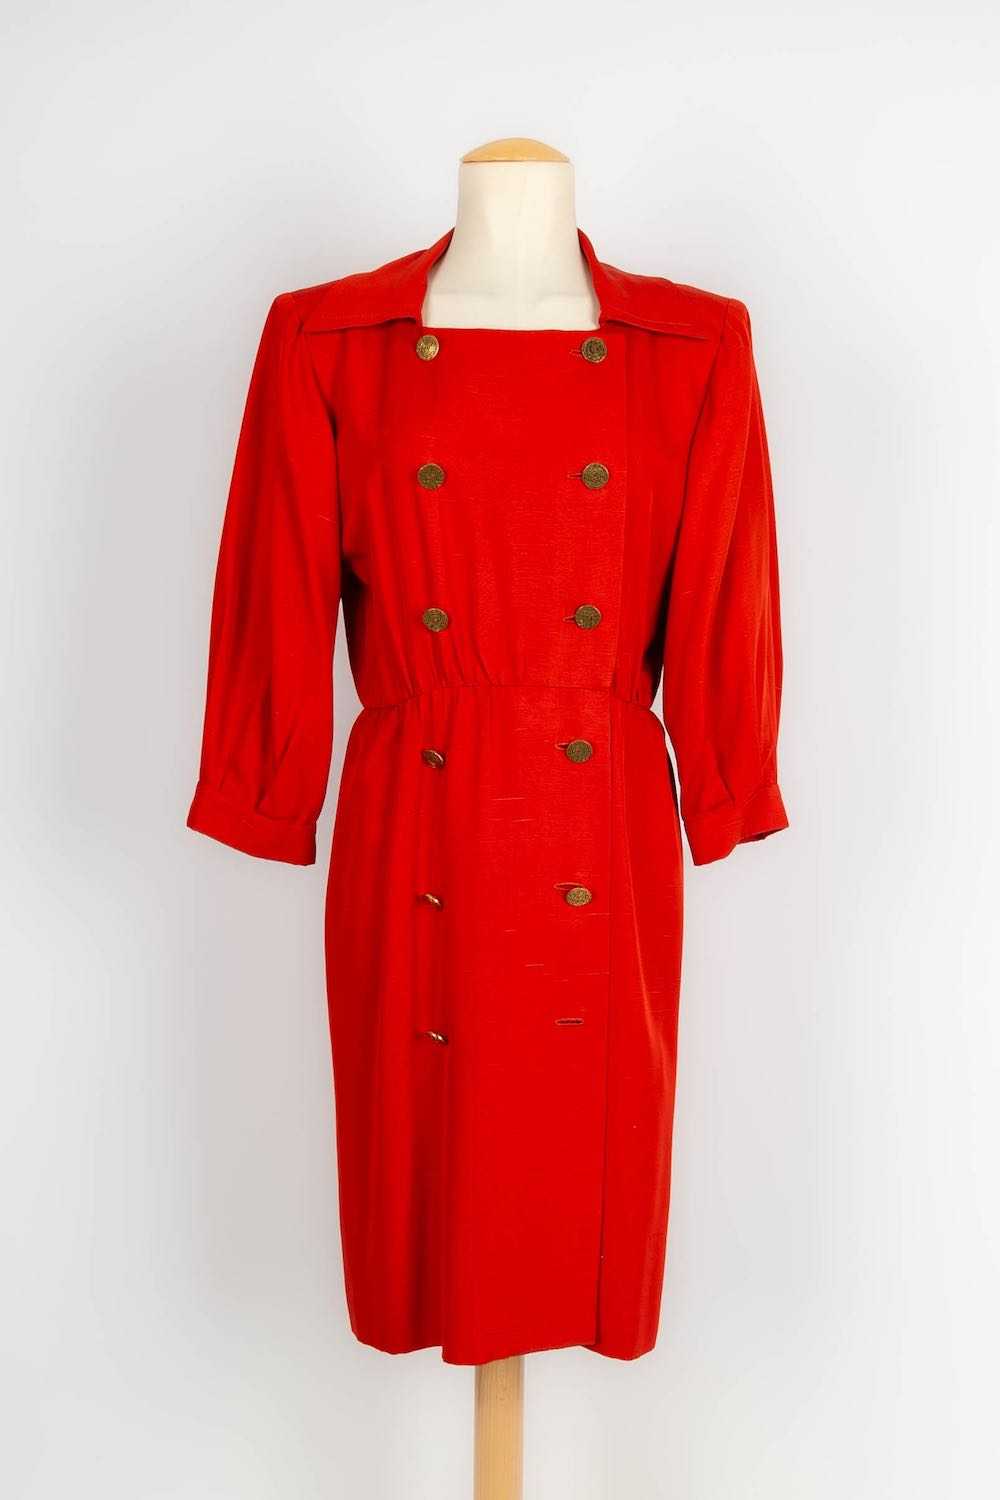 Yves Saint Laurent Haute Couture Dress - image 1